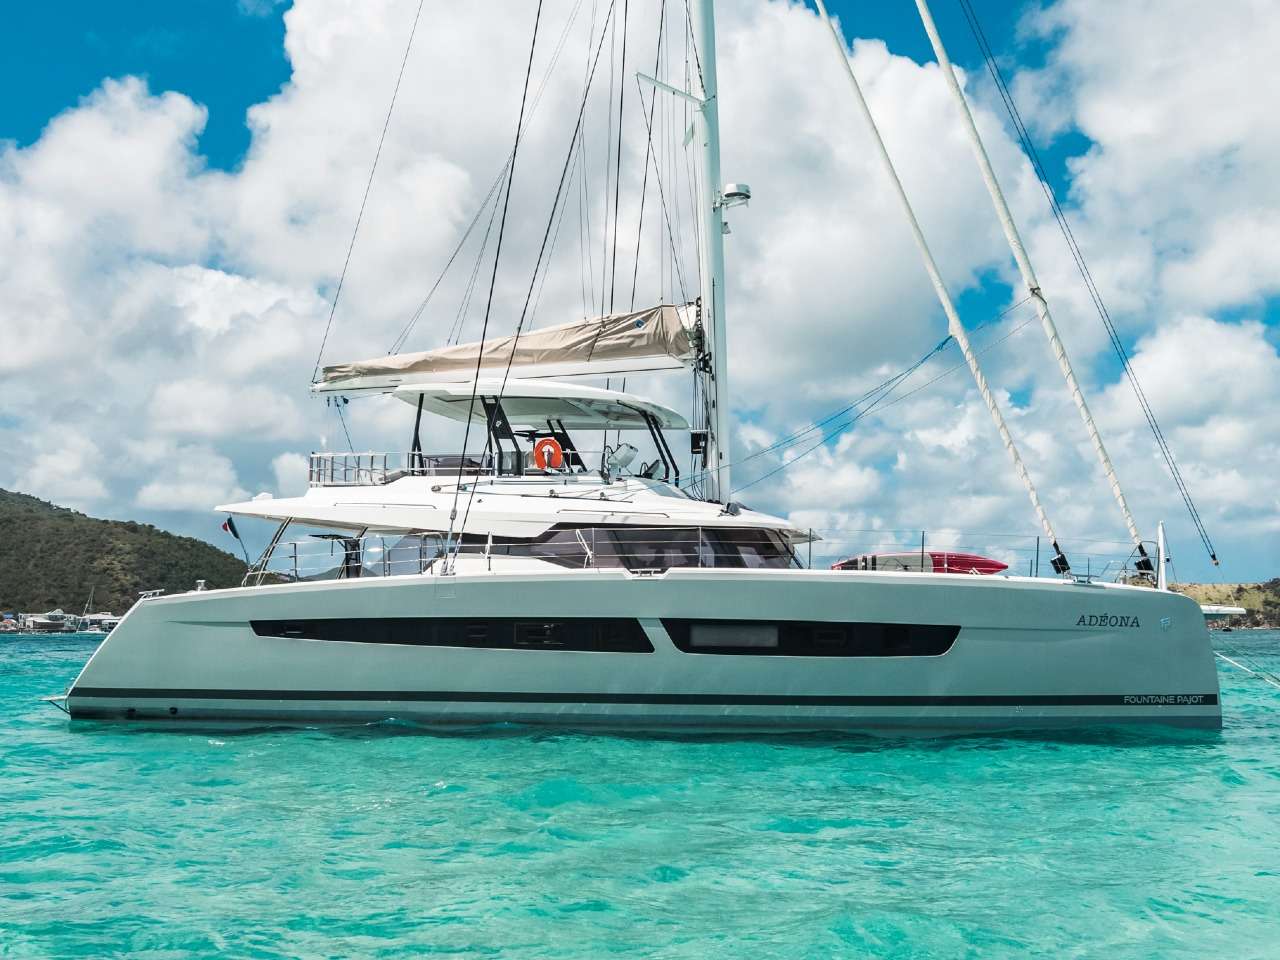 ADEONA Yacht Charter - Profile